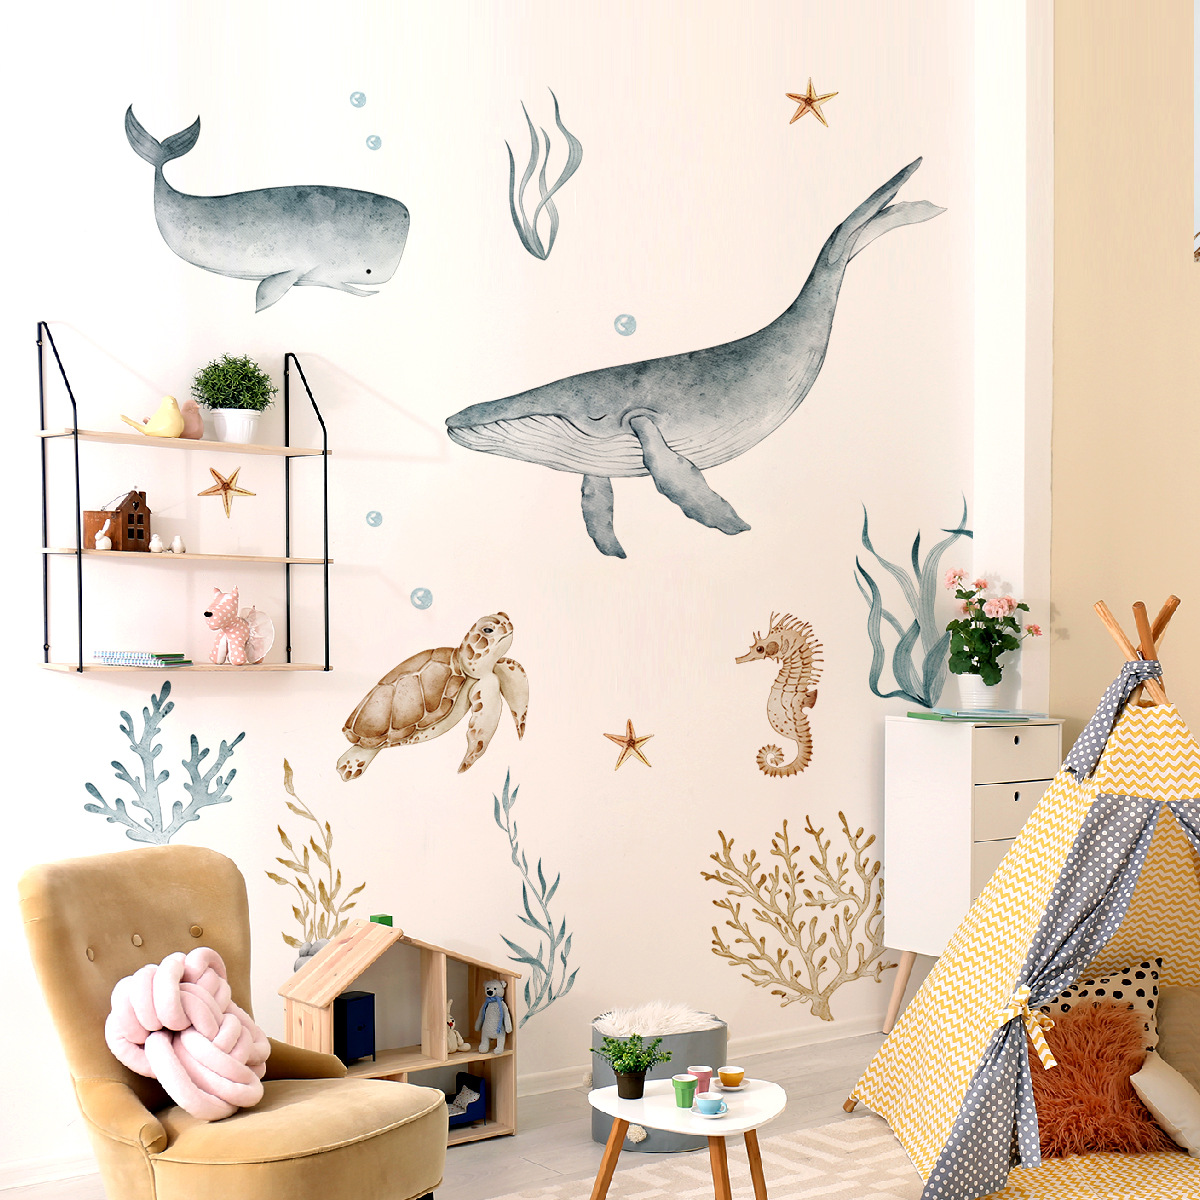 Մանկական սենյակի պատի կպչուն պիտակներ Cute Fish 3D պատի դեկալ մանկական սենյակի համար